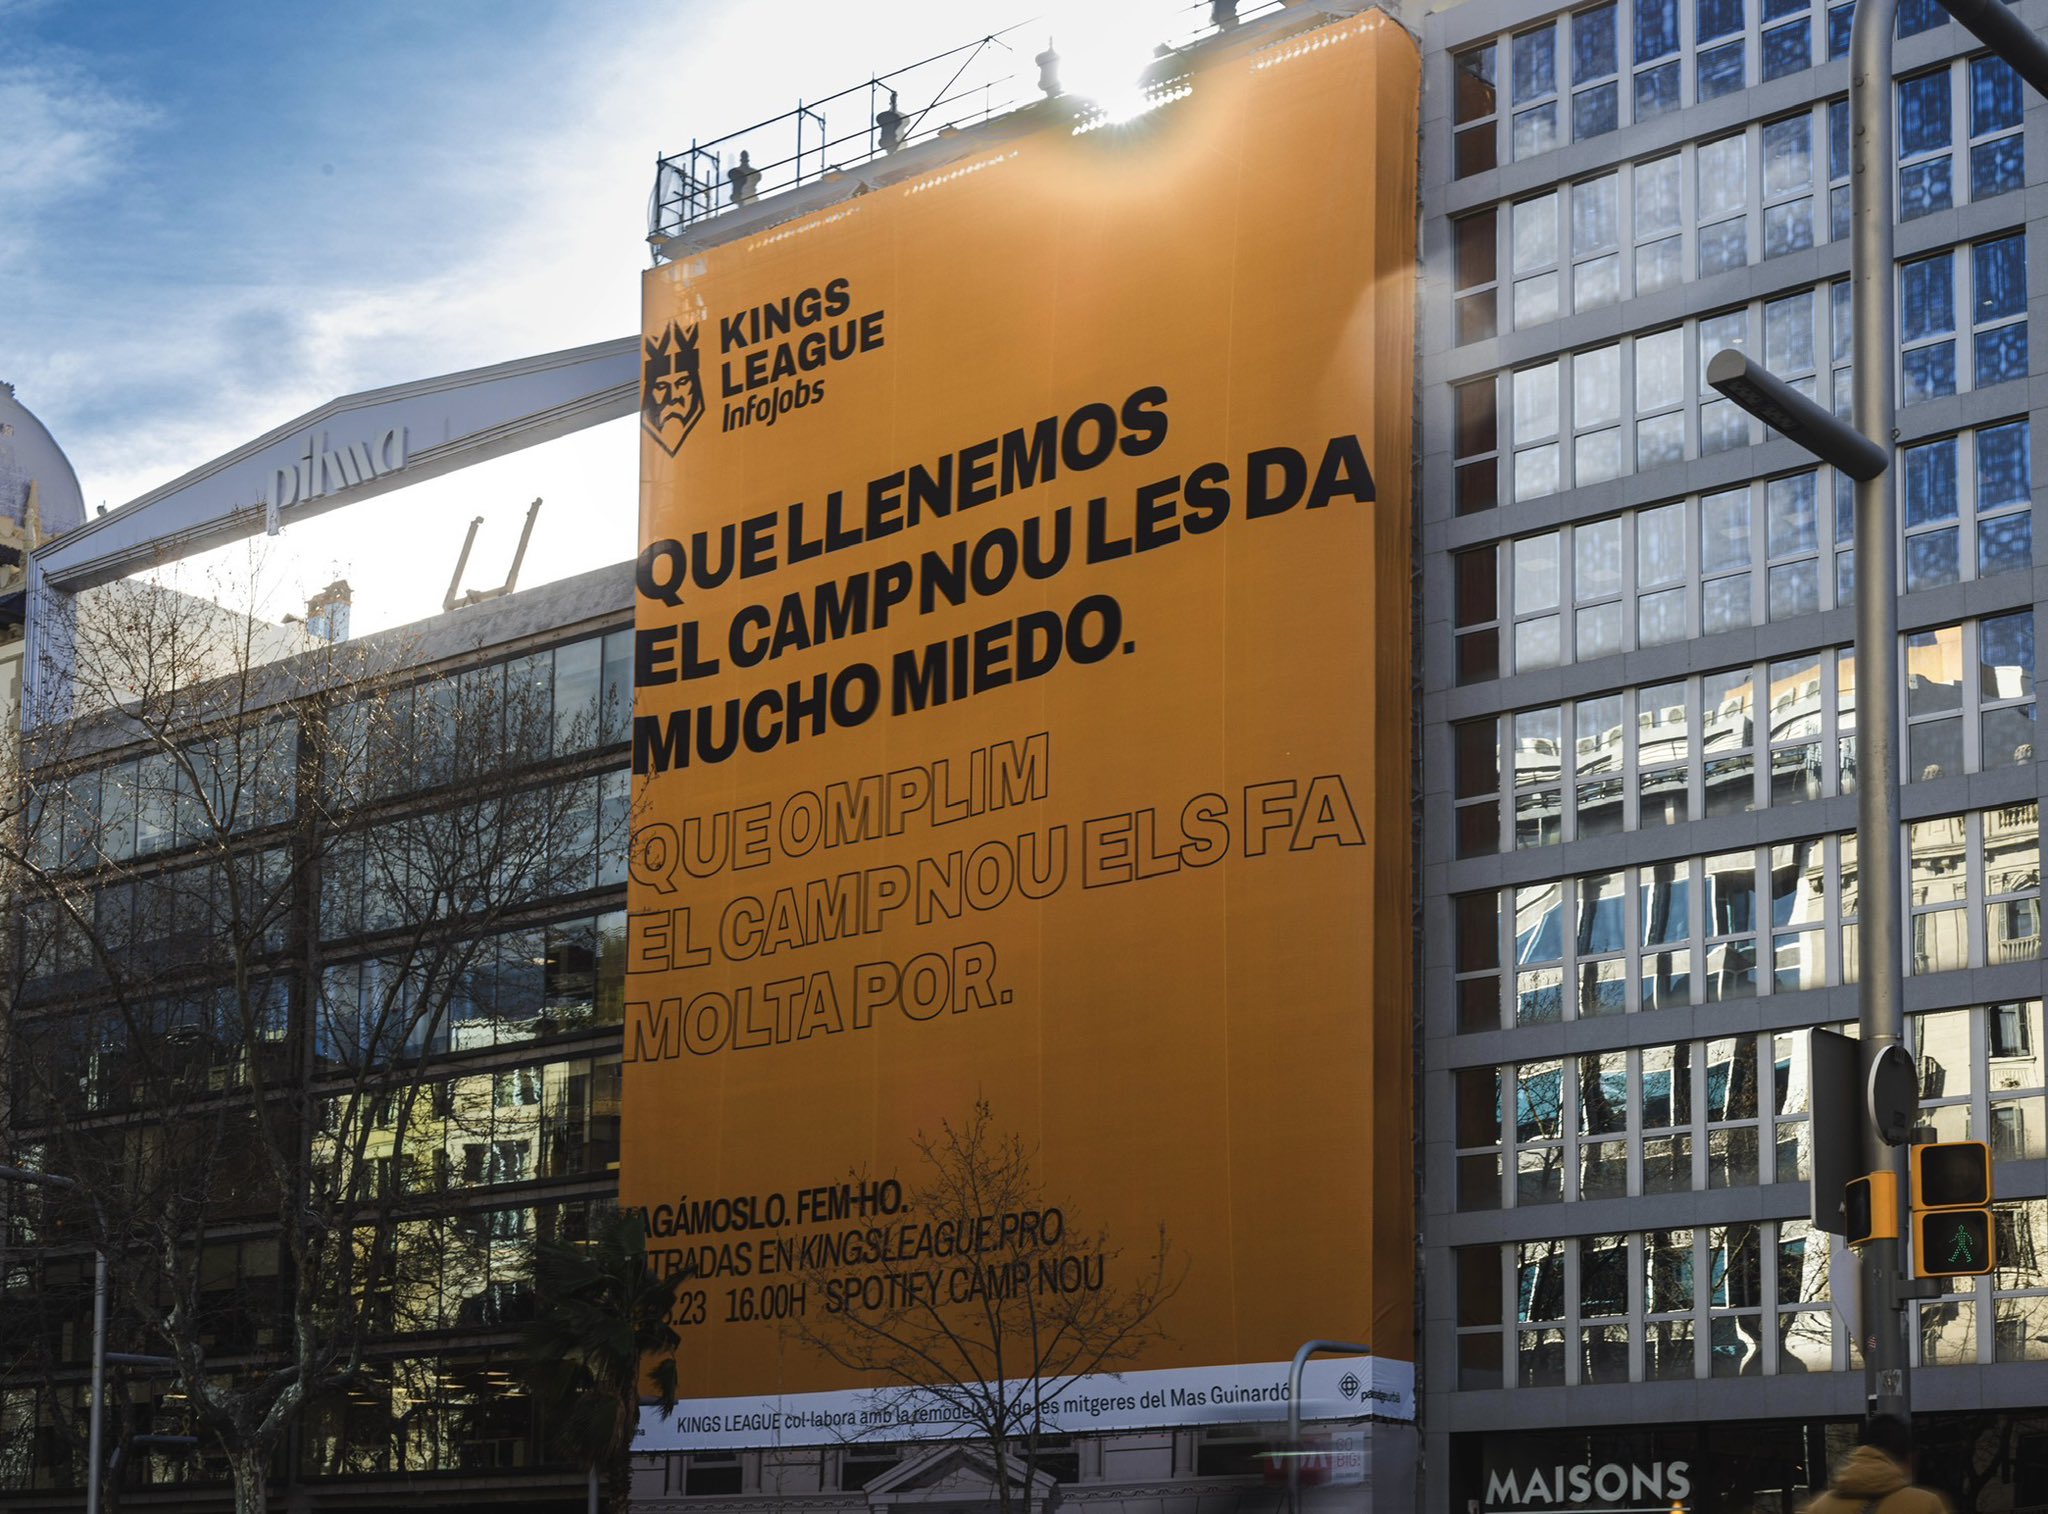 Indignación por la pancarta bilingüe de la Kings League que invisibiliza al catalán